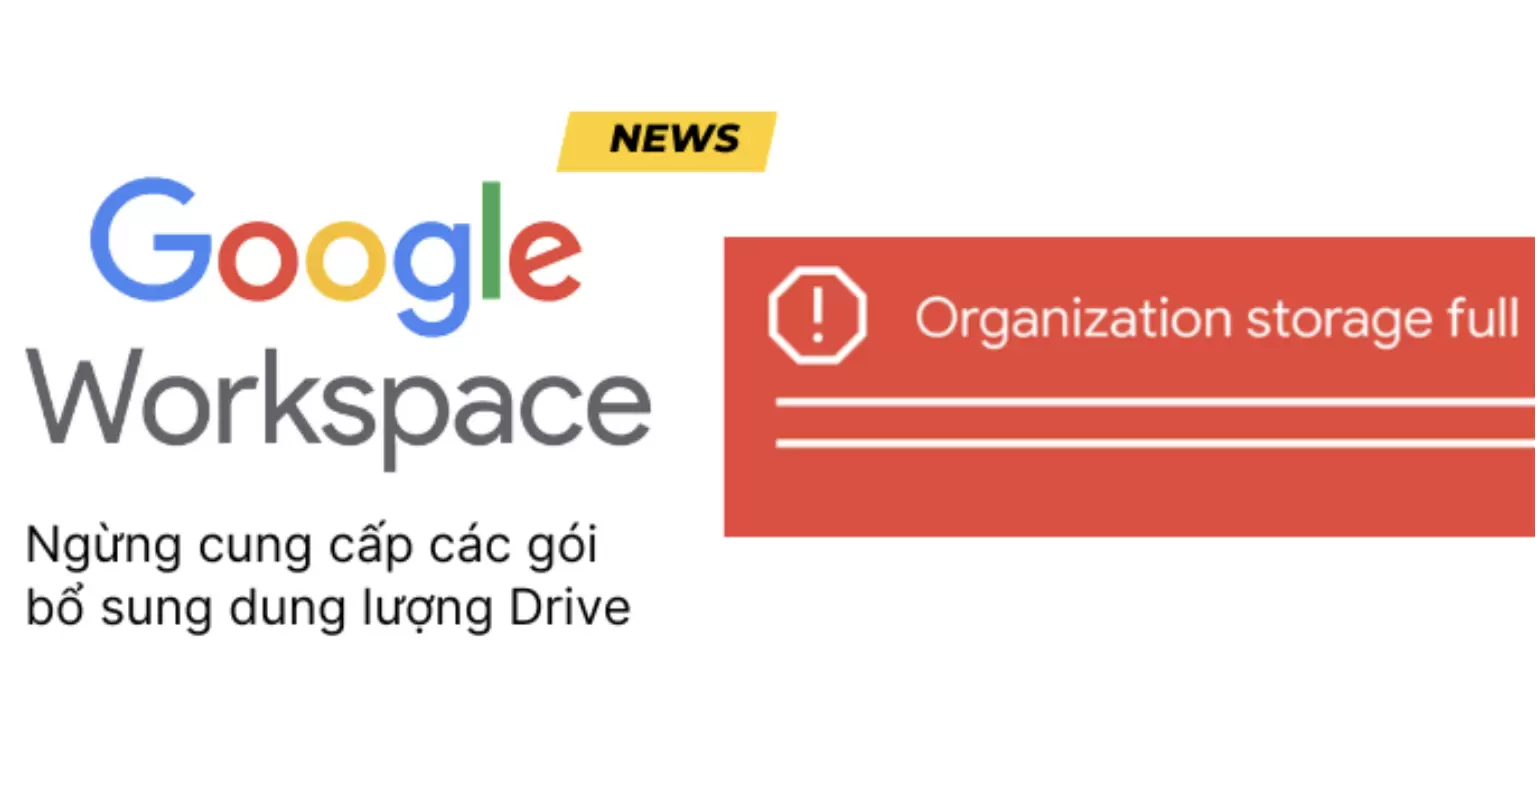 Google Workspace ngừng cung cấp các gói bổ sung dung lượng Drive